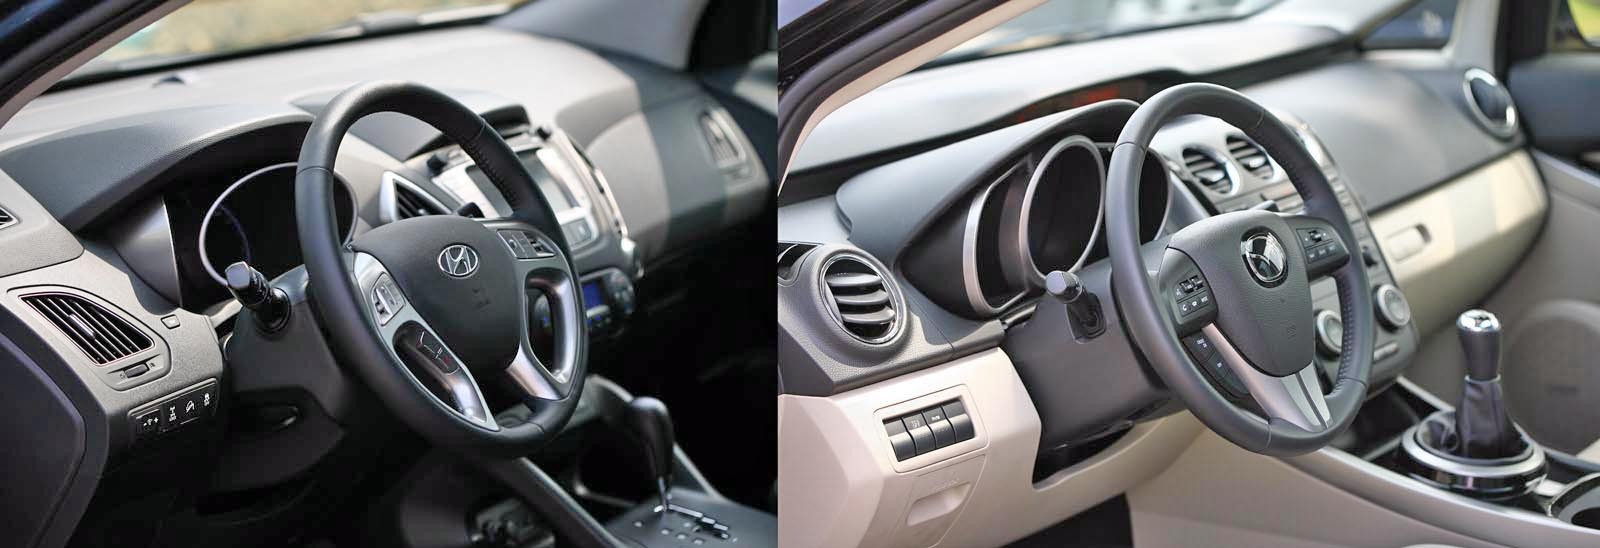 Si la interior, Mazda CX-7 este mult peste Hyundai ix35 la capitolul calitate si aspect